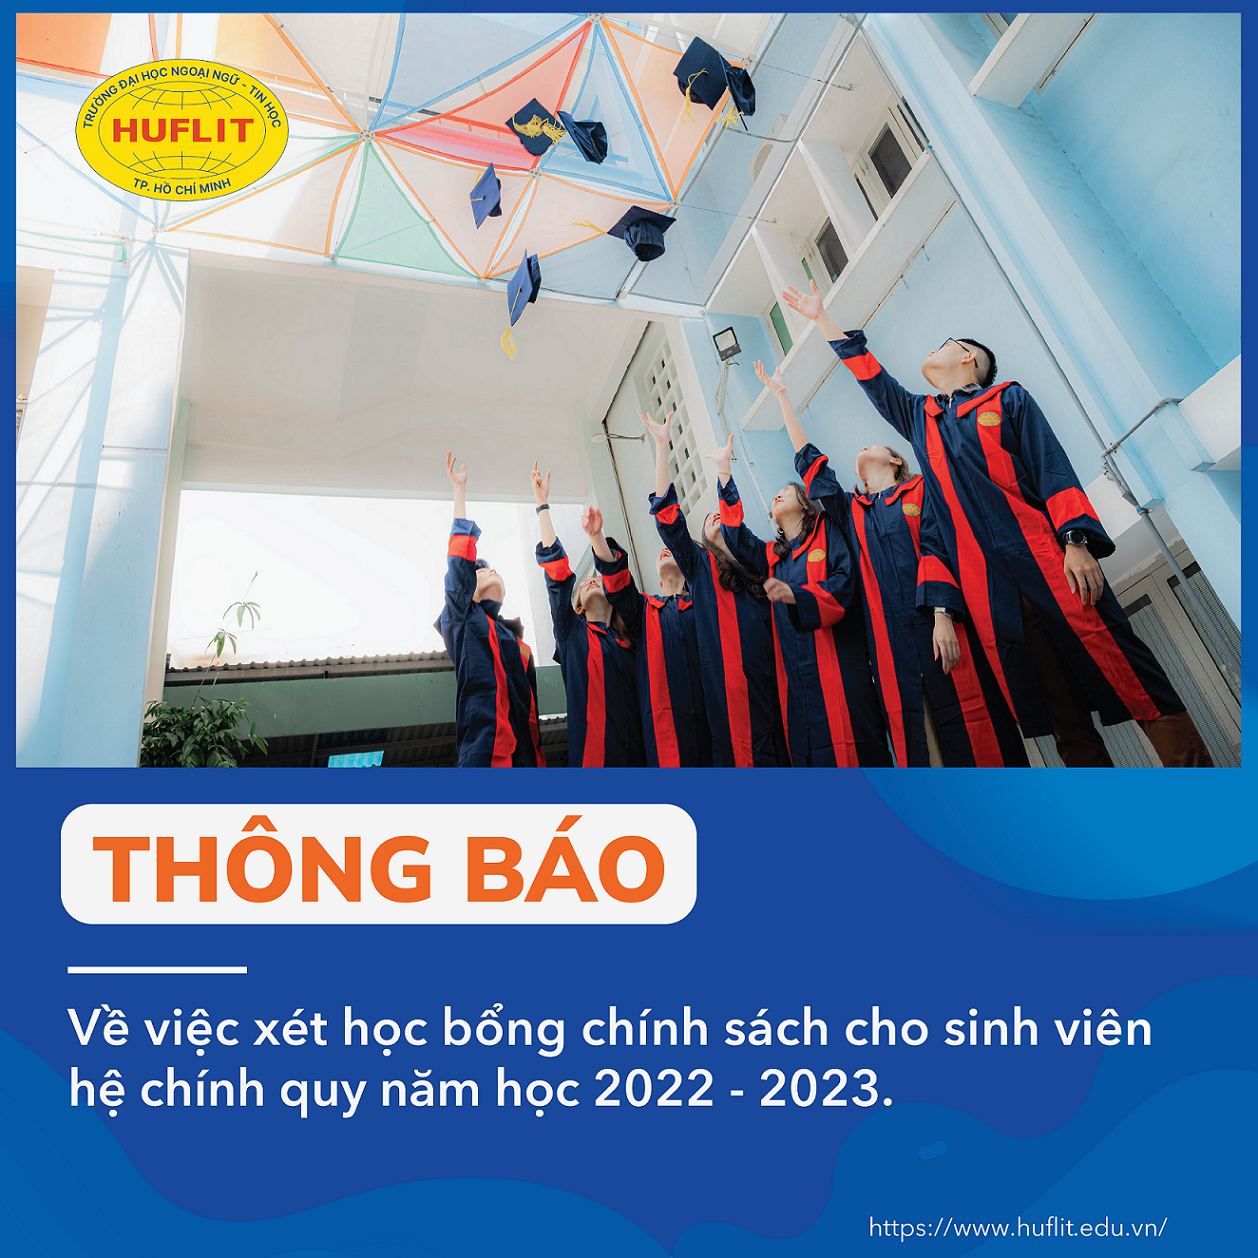 25.08.2022 xet hoc bong chinh sach